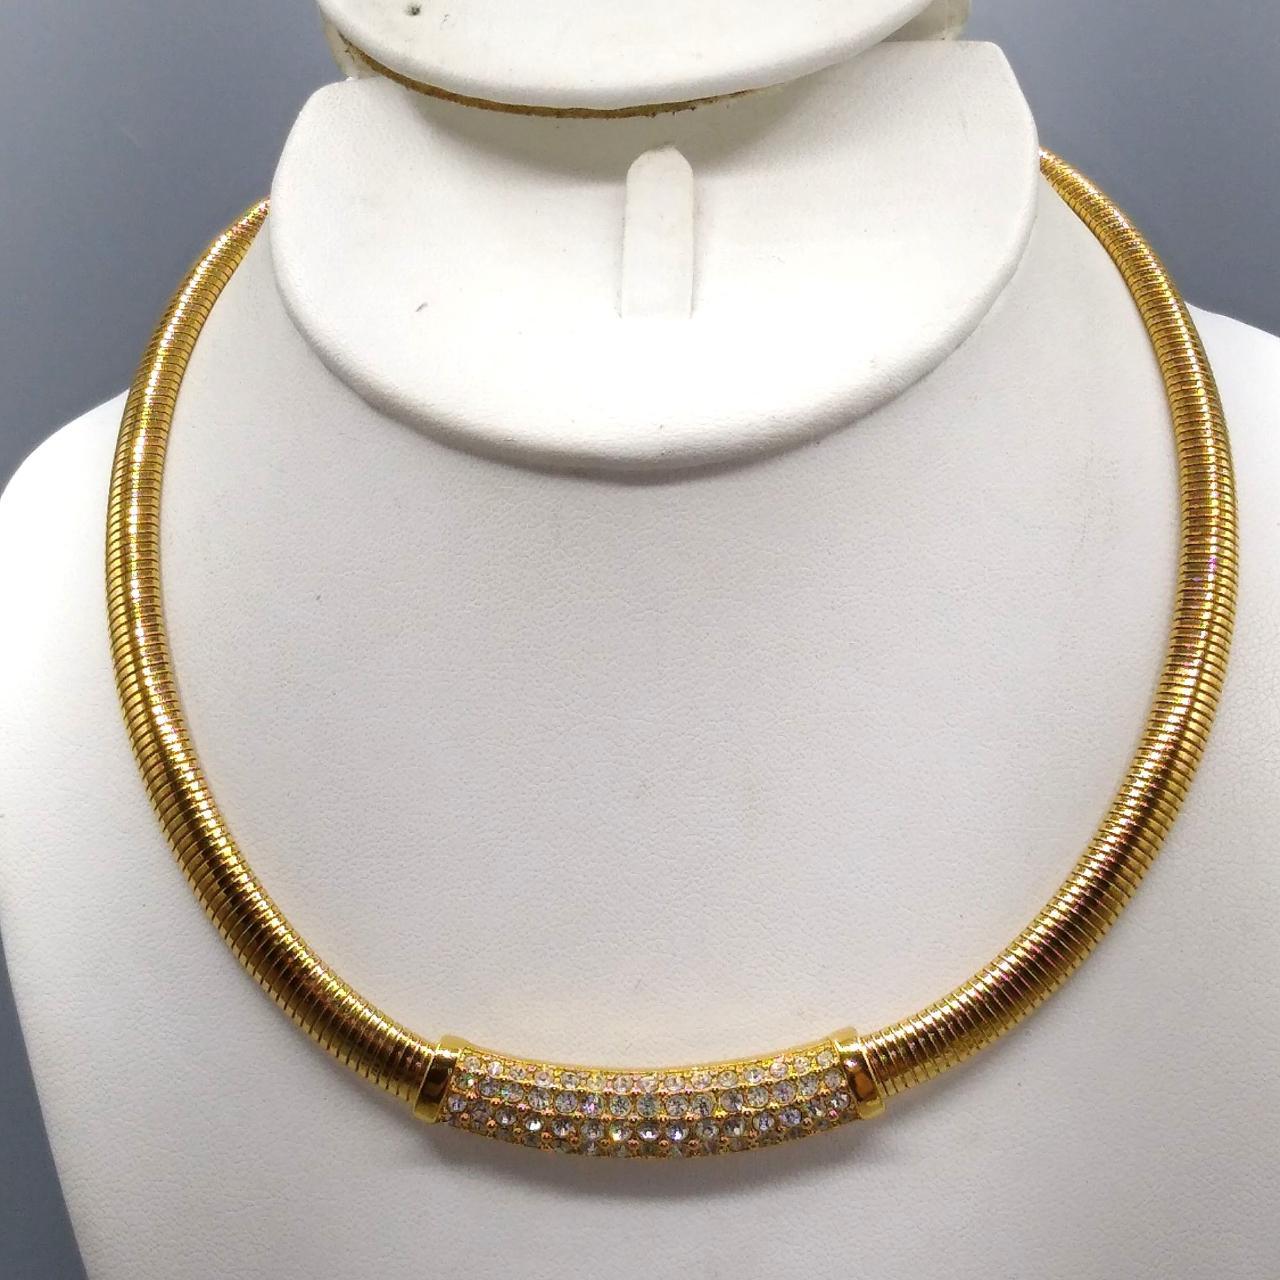 Product Image 2 - Vintage Swarovski Omega Necklace, Gold